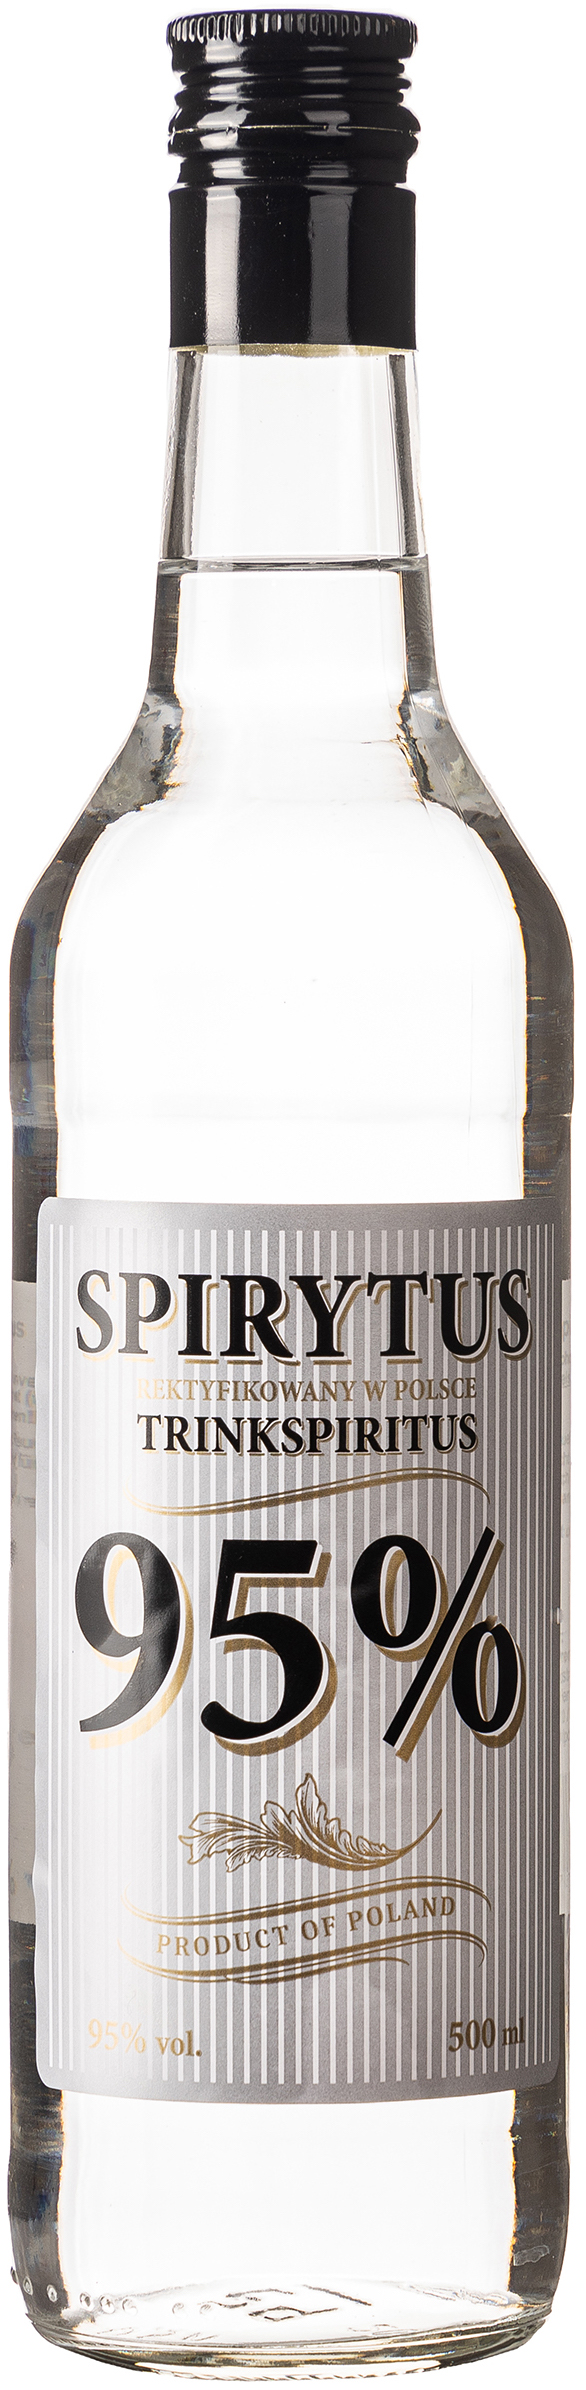 Spirytus Trinkspiritus 95% vol. 0,5L